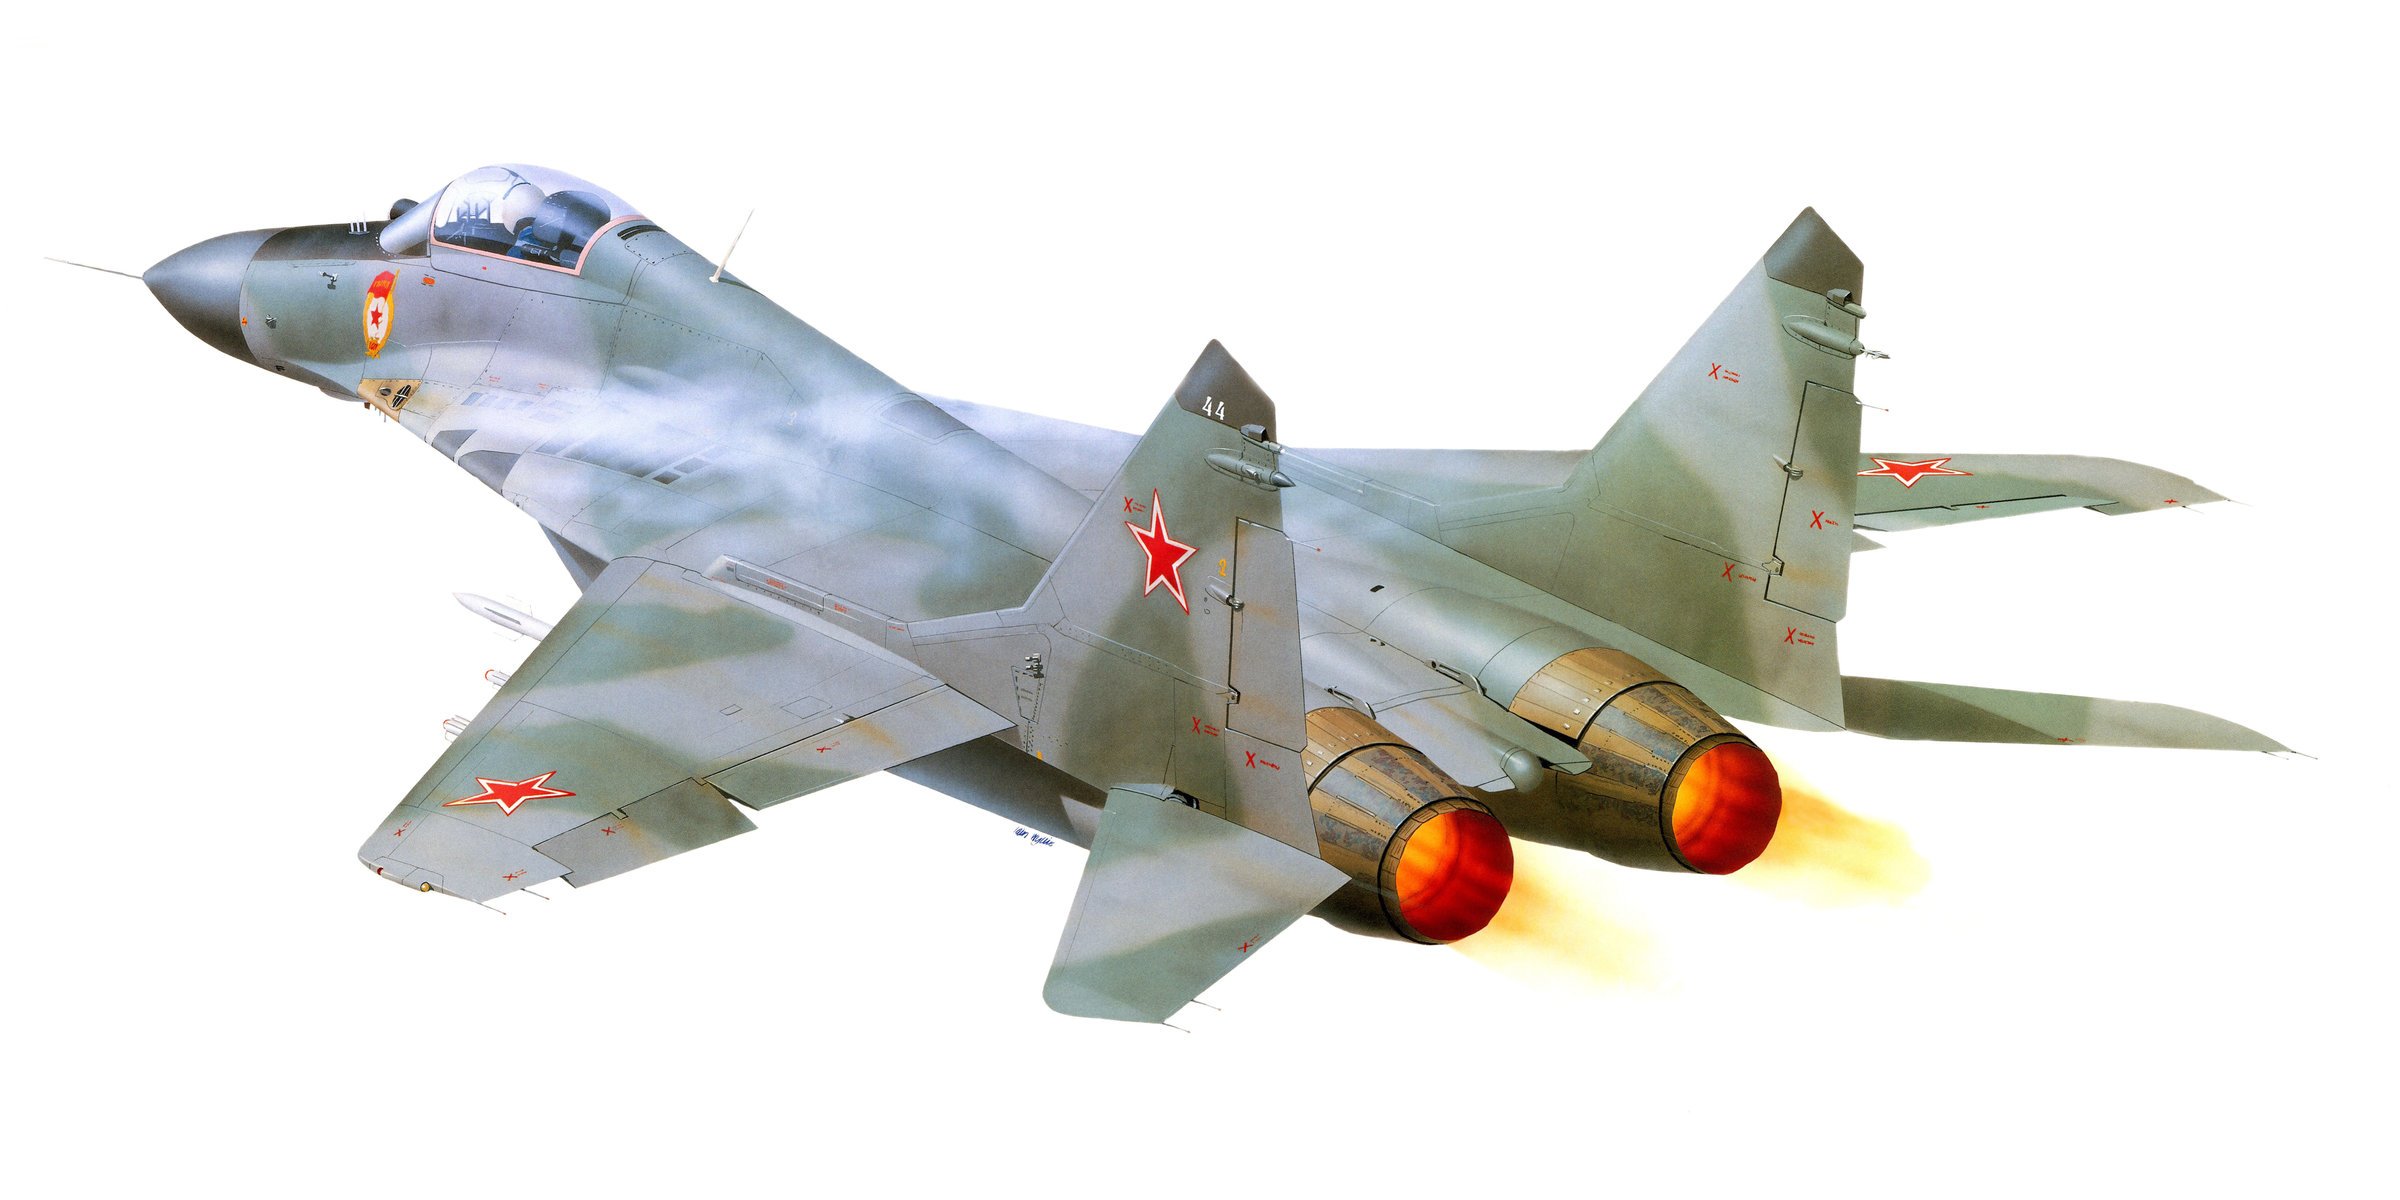 арт самолет миг-29 миг -29 точка опоры советский российский многоцелевой легкий фронтовой истребитель поколения окб миг ввс россии.